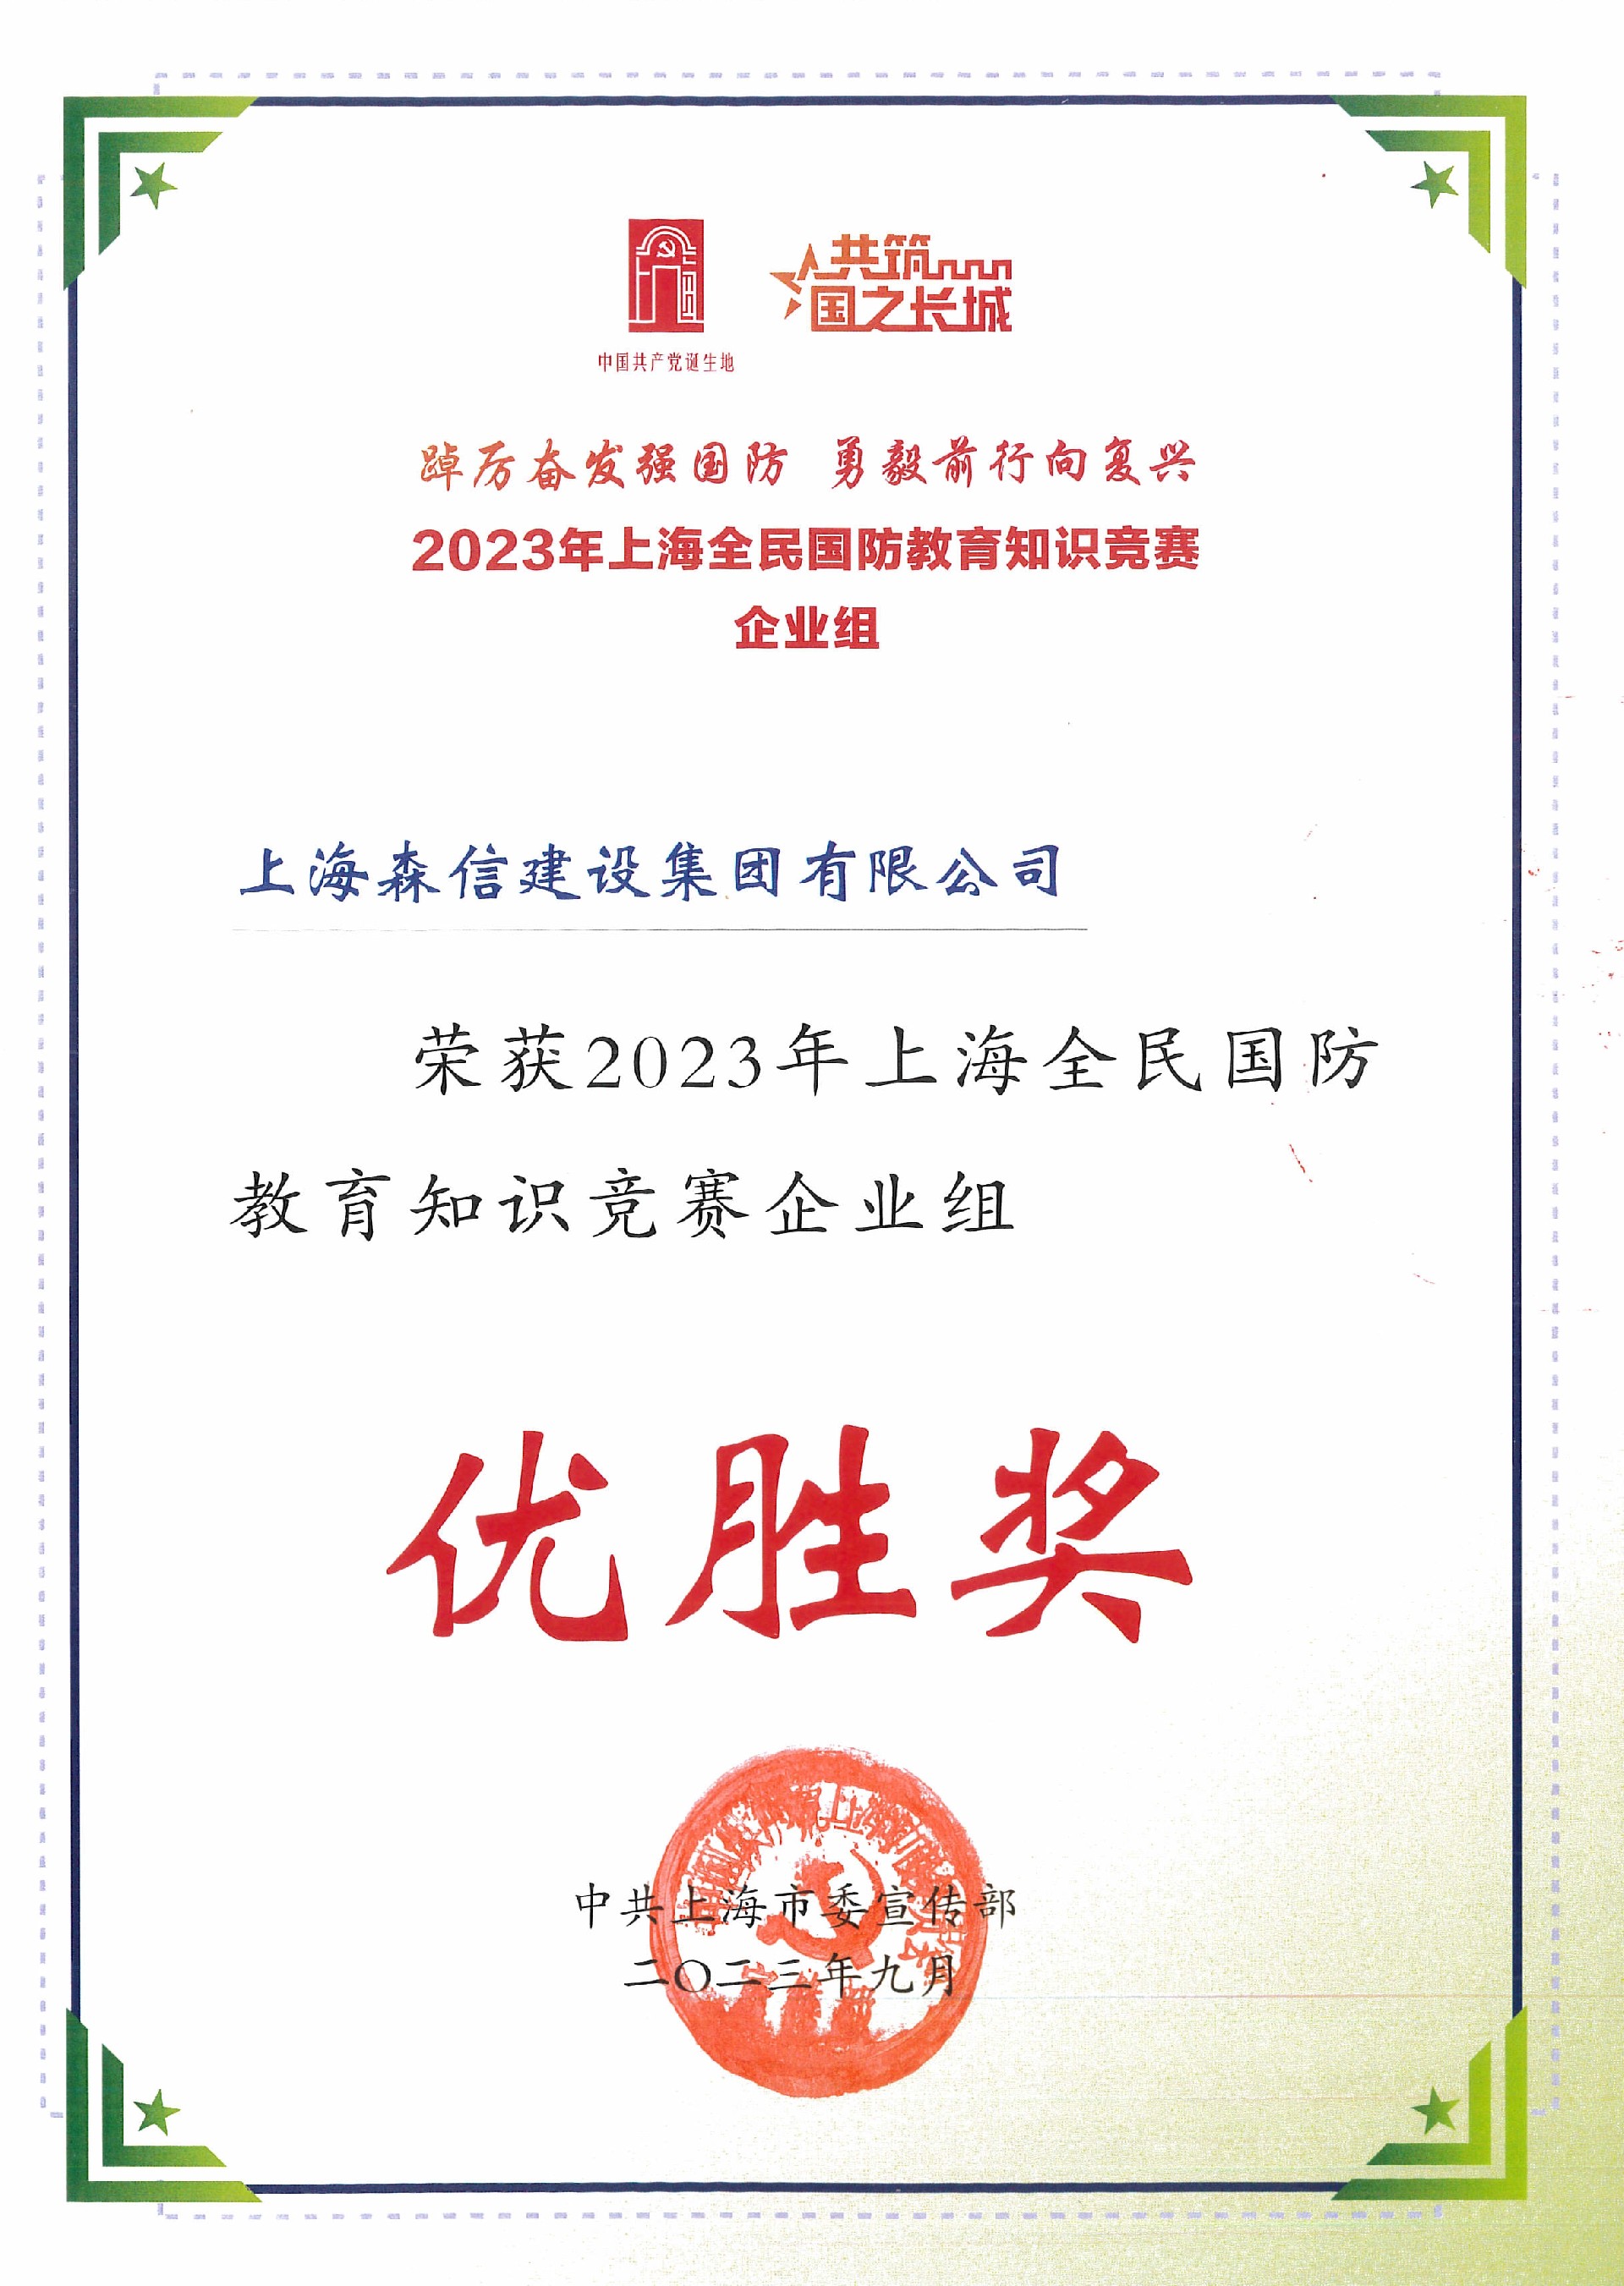 2023年上海全民国防教育知识竞赛（企业组）优胜奖.jpg